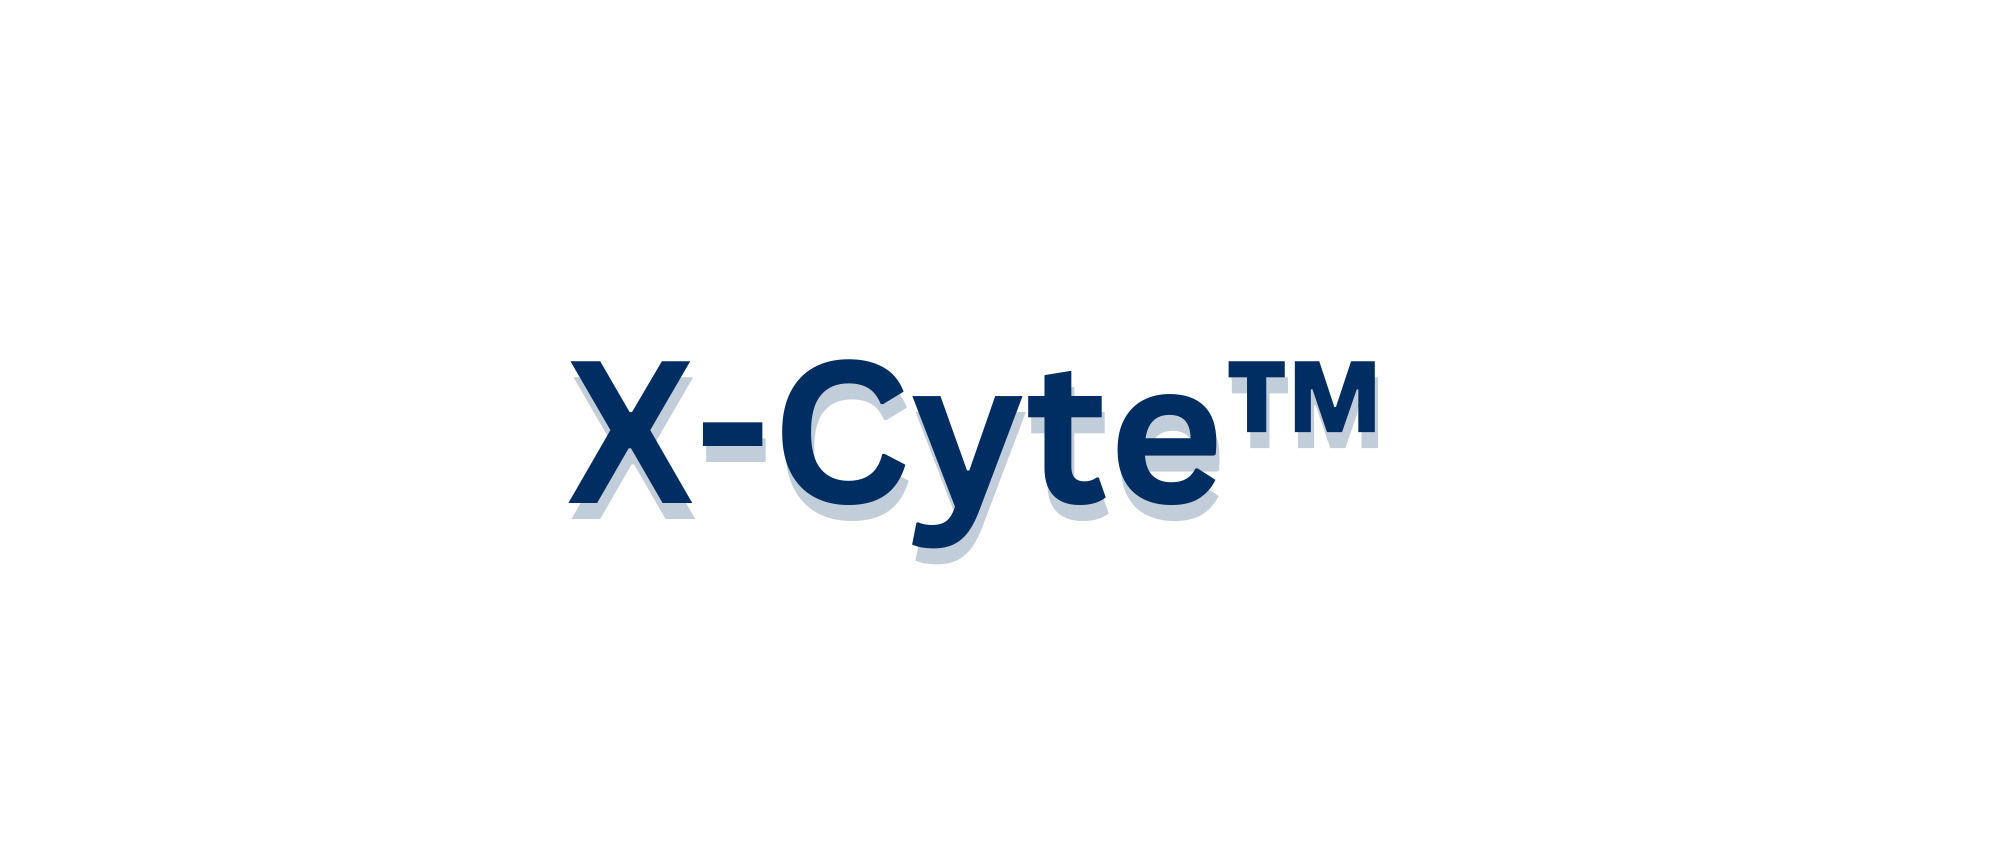 X-Cyte - blue